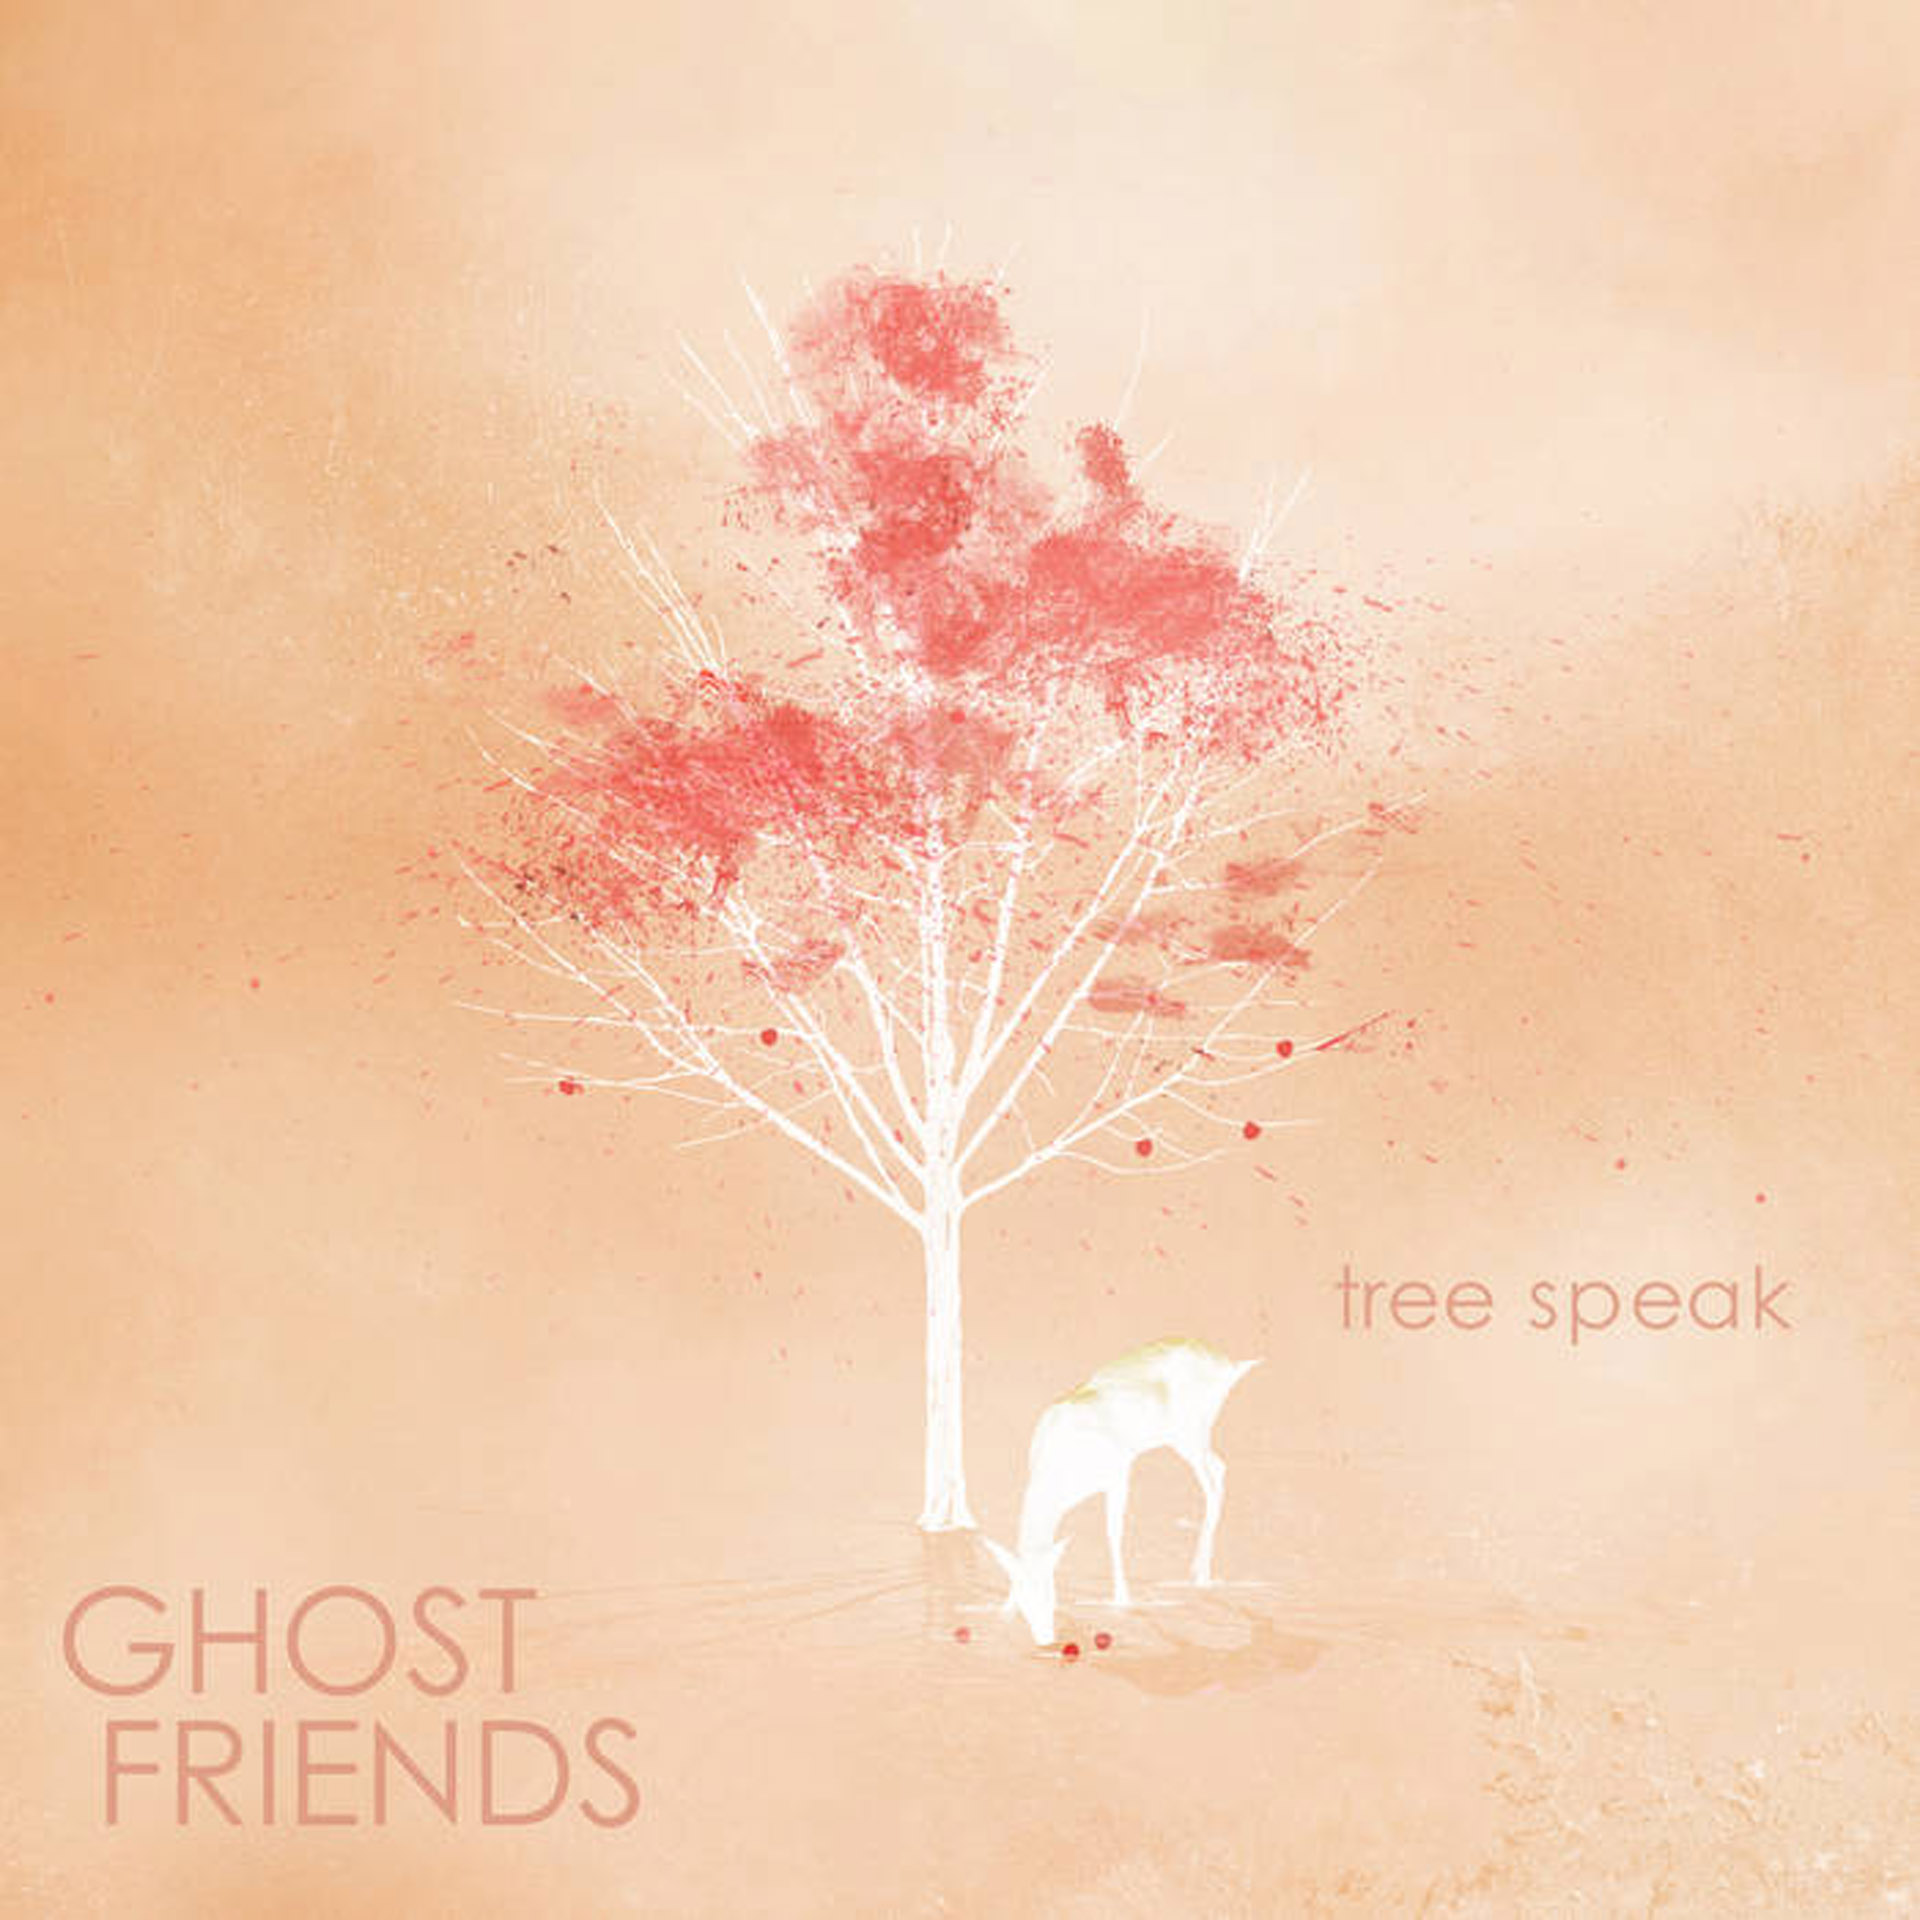 Speaking tree. Ghost friend. Ghost with friends. Ghost speak. Mu Ghost friend.